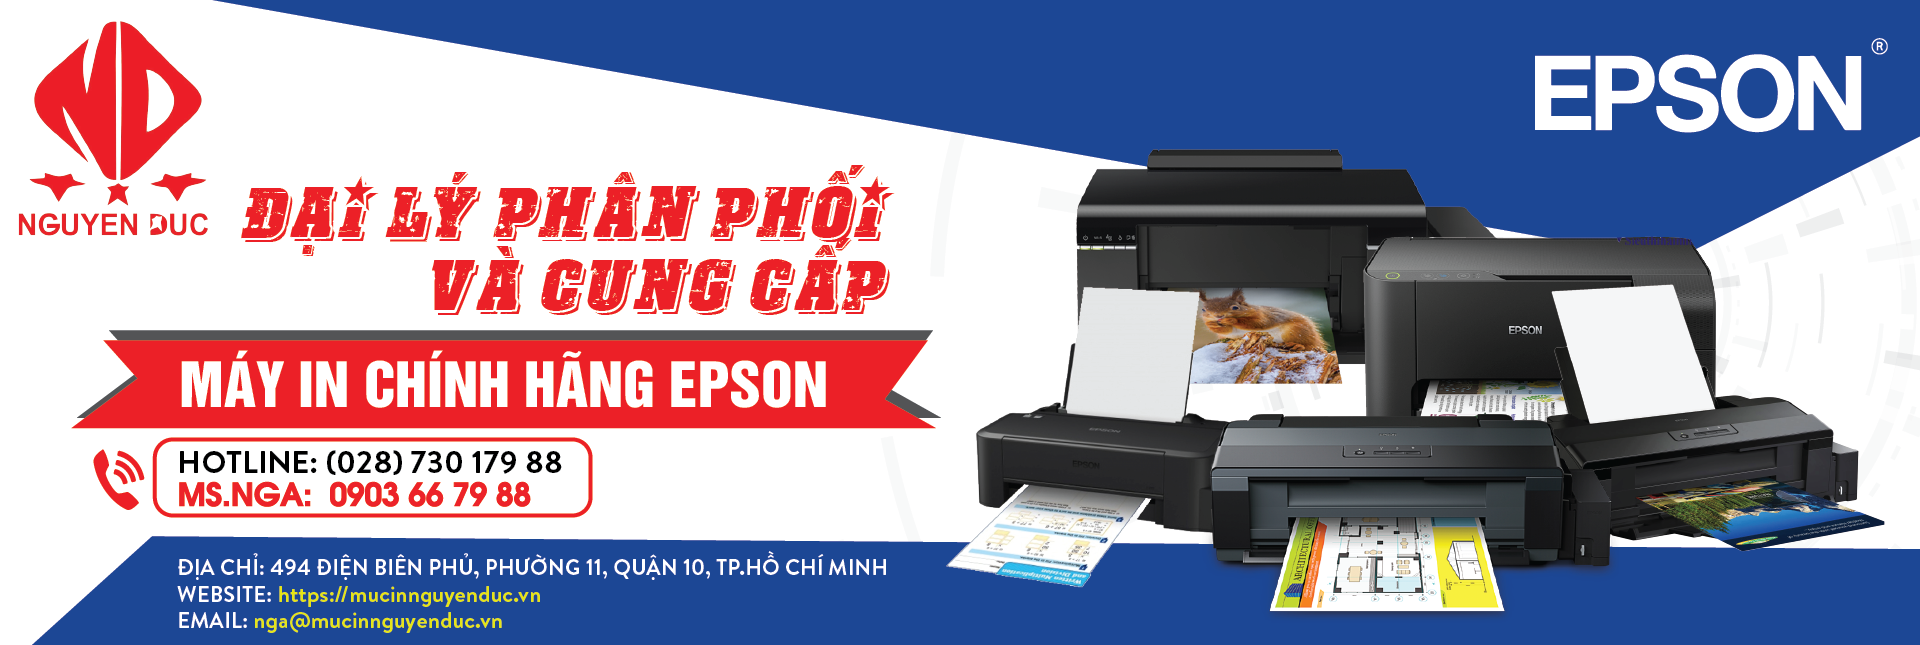 Đại lí phân phối máy in epson LQ-310 - chính hãng, giao hàng và lắp đặt tại quận Bình Thạnh, thành phố Hồ Chí Minh